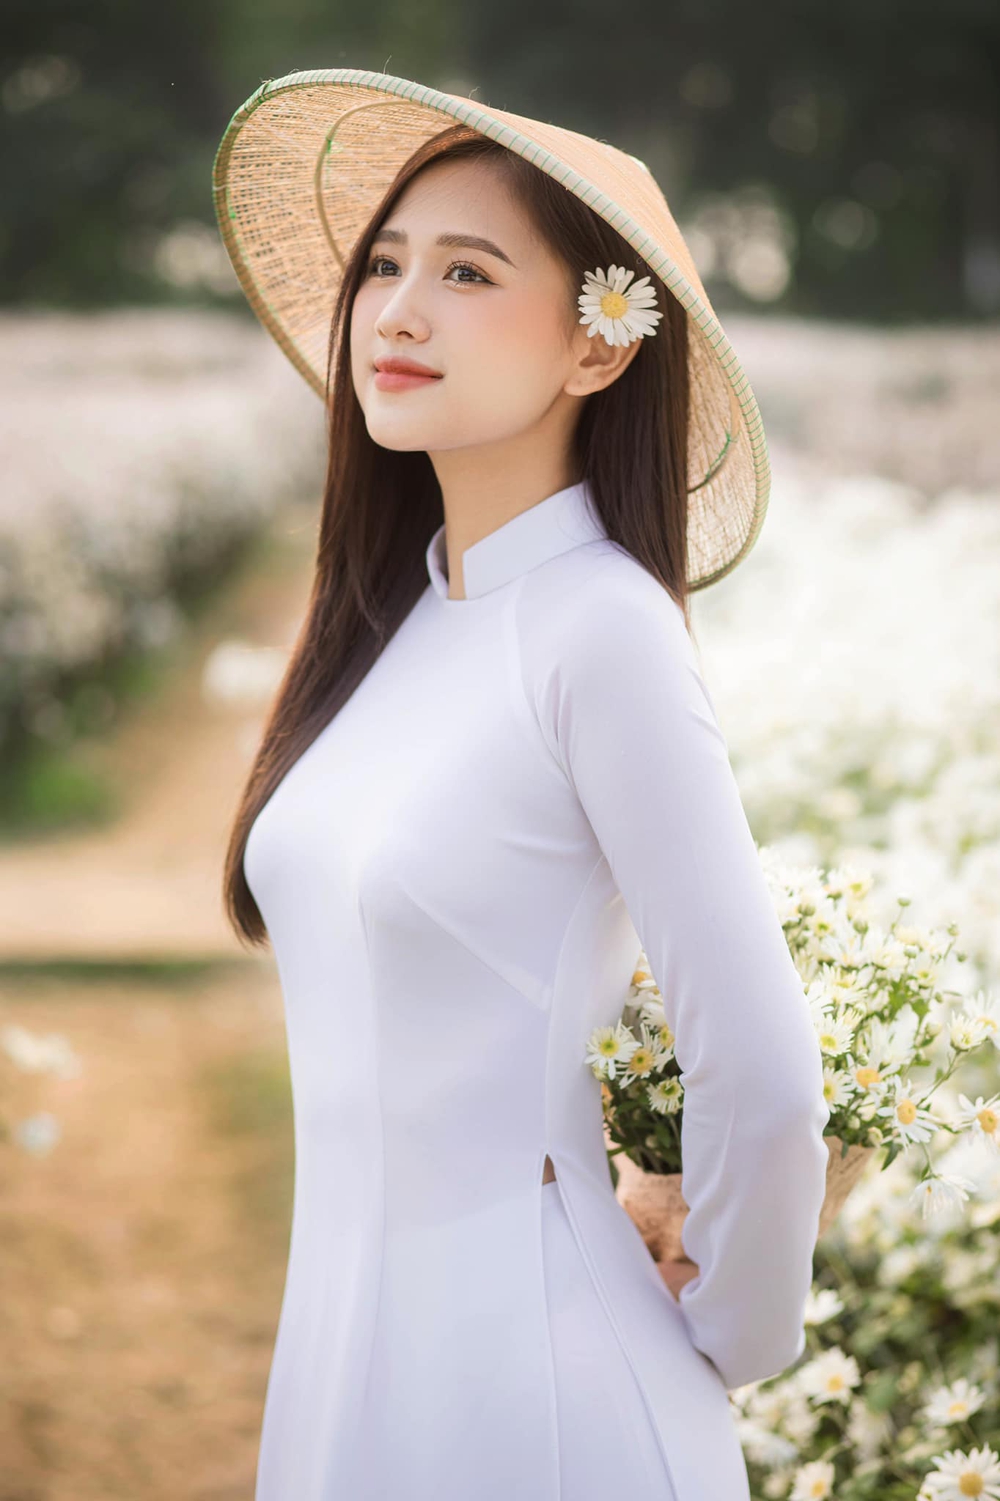 Vẻ đẹp ngọt ngào tựa nữ sinh của Hoa khôi Thu Hương - nữ chính MV Sai cách yêu. - Ảnh 5.